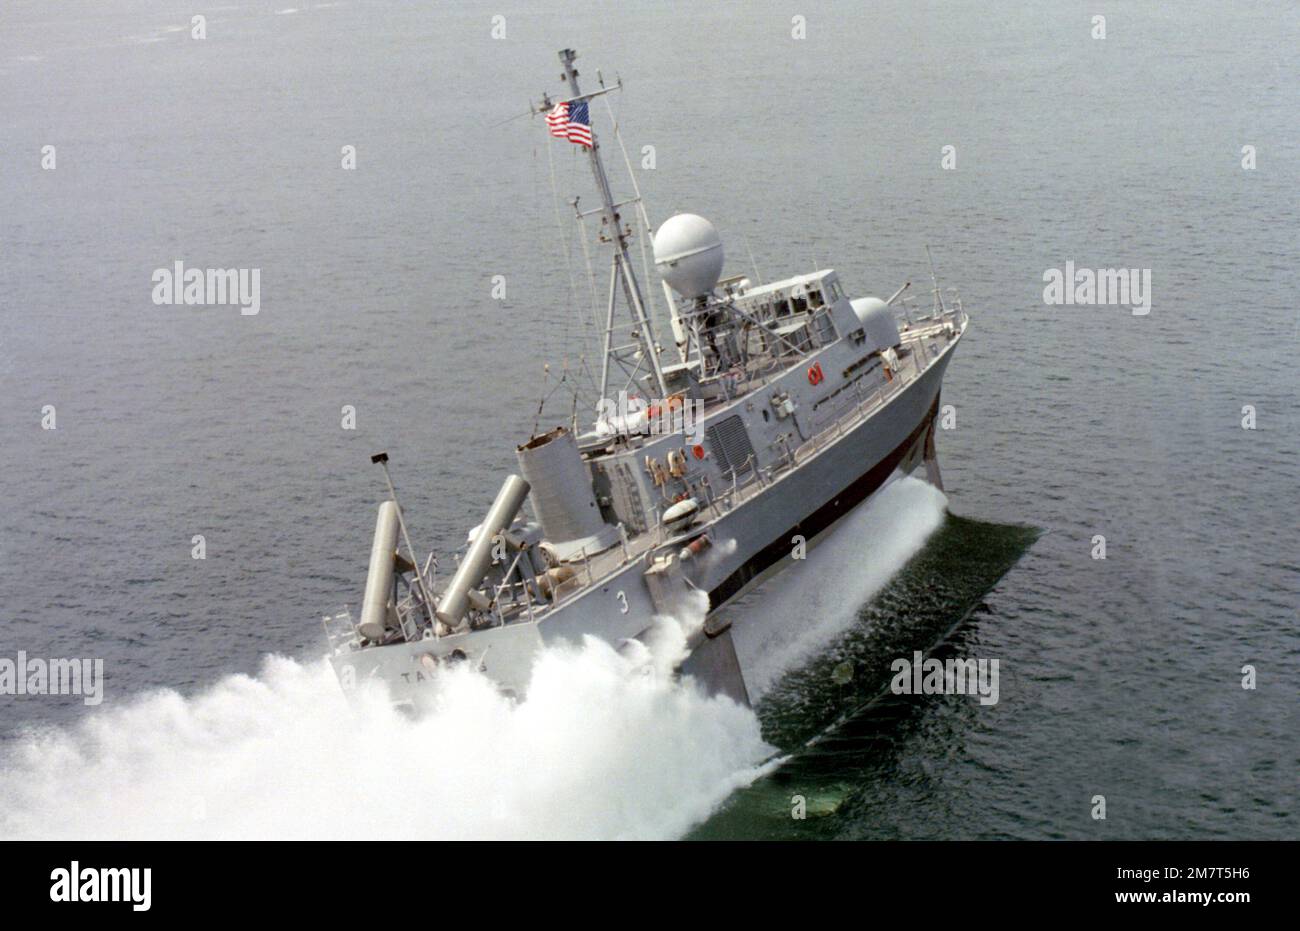 Une vue à tribord du combattant de la patrouille de missiles guidés (hydrofoil) TAURUS (PHM-3) en cours sur ses hydrofoils. Le navire a été construit par Boeing Marine Systems. Base: Puget Sound État: Washington (WA) pays: Etats-Unis d'Amérique (USA) Banque D'Images